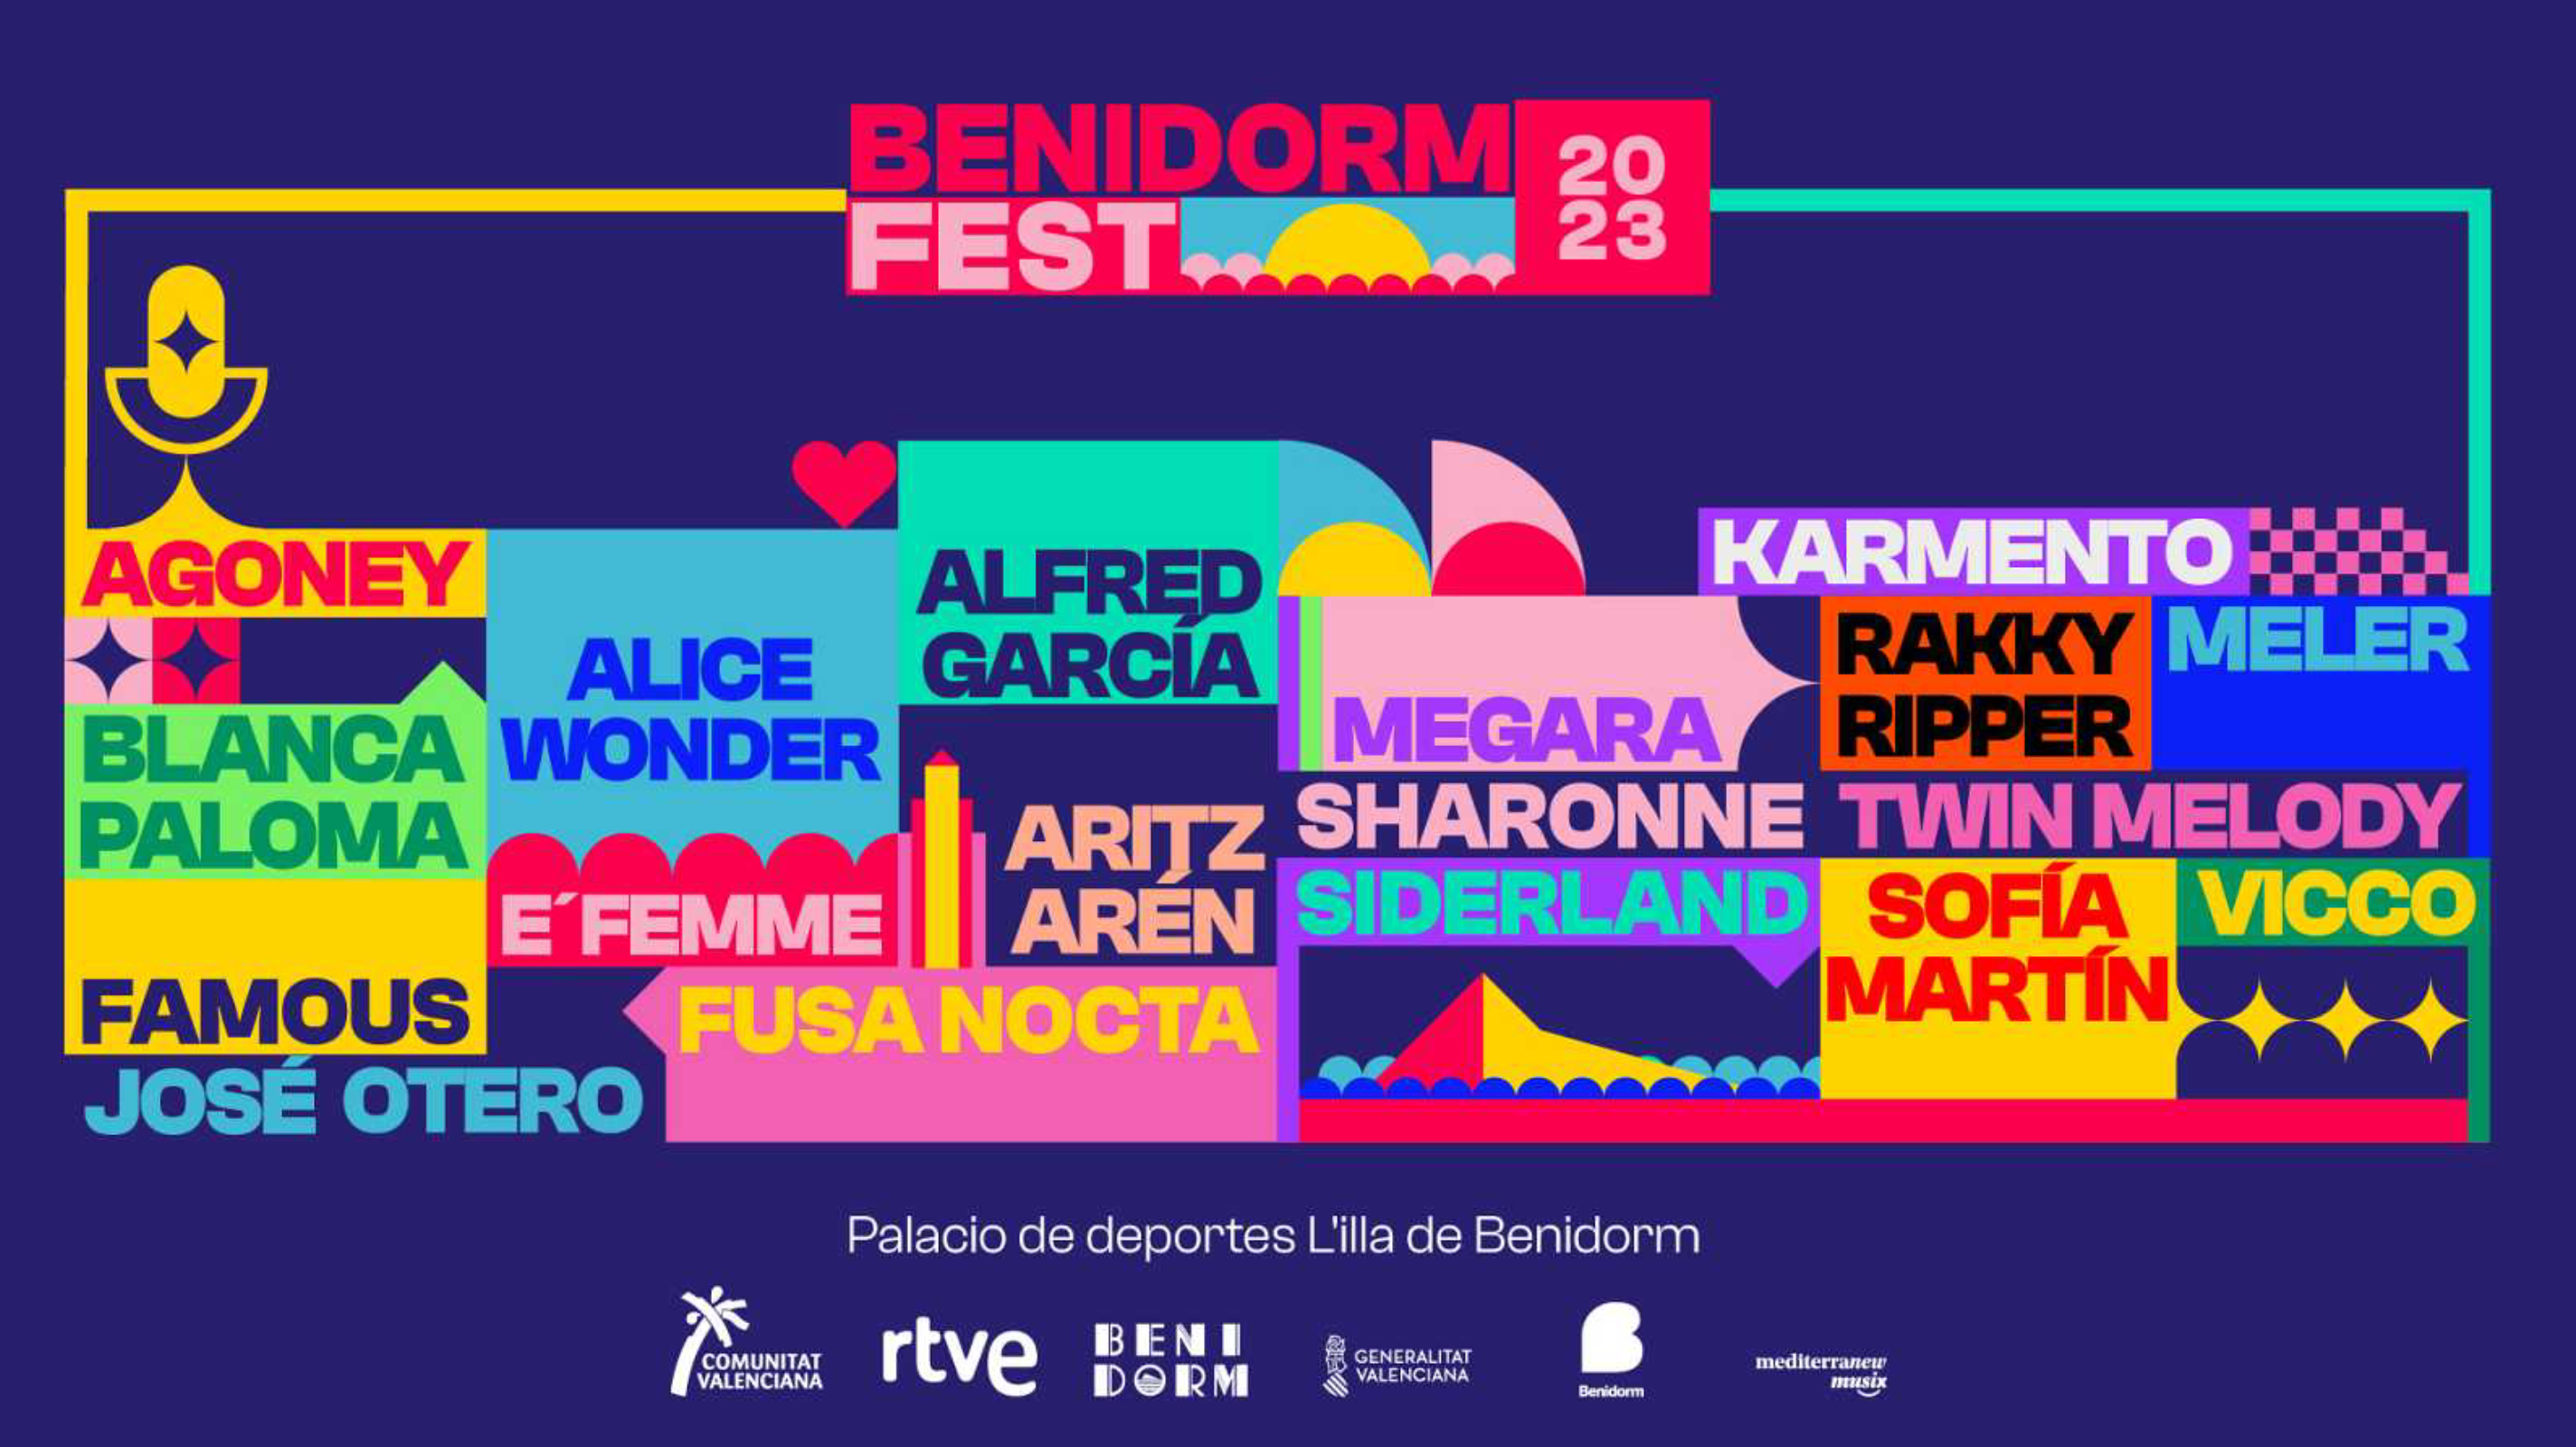 Conoce mejor a los artistas del Benidorm Fest